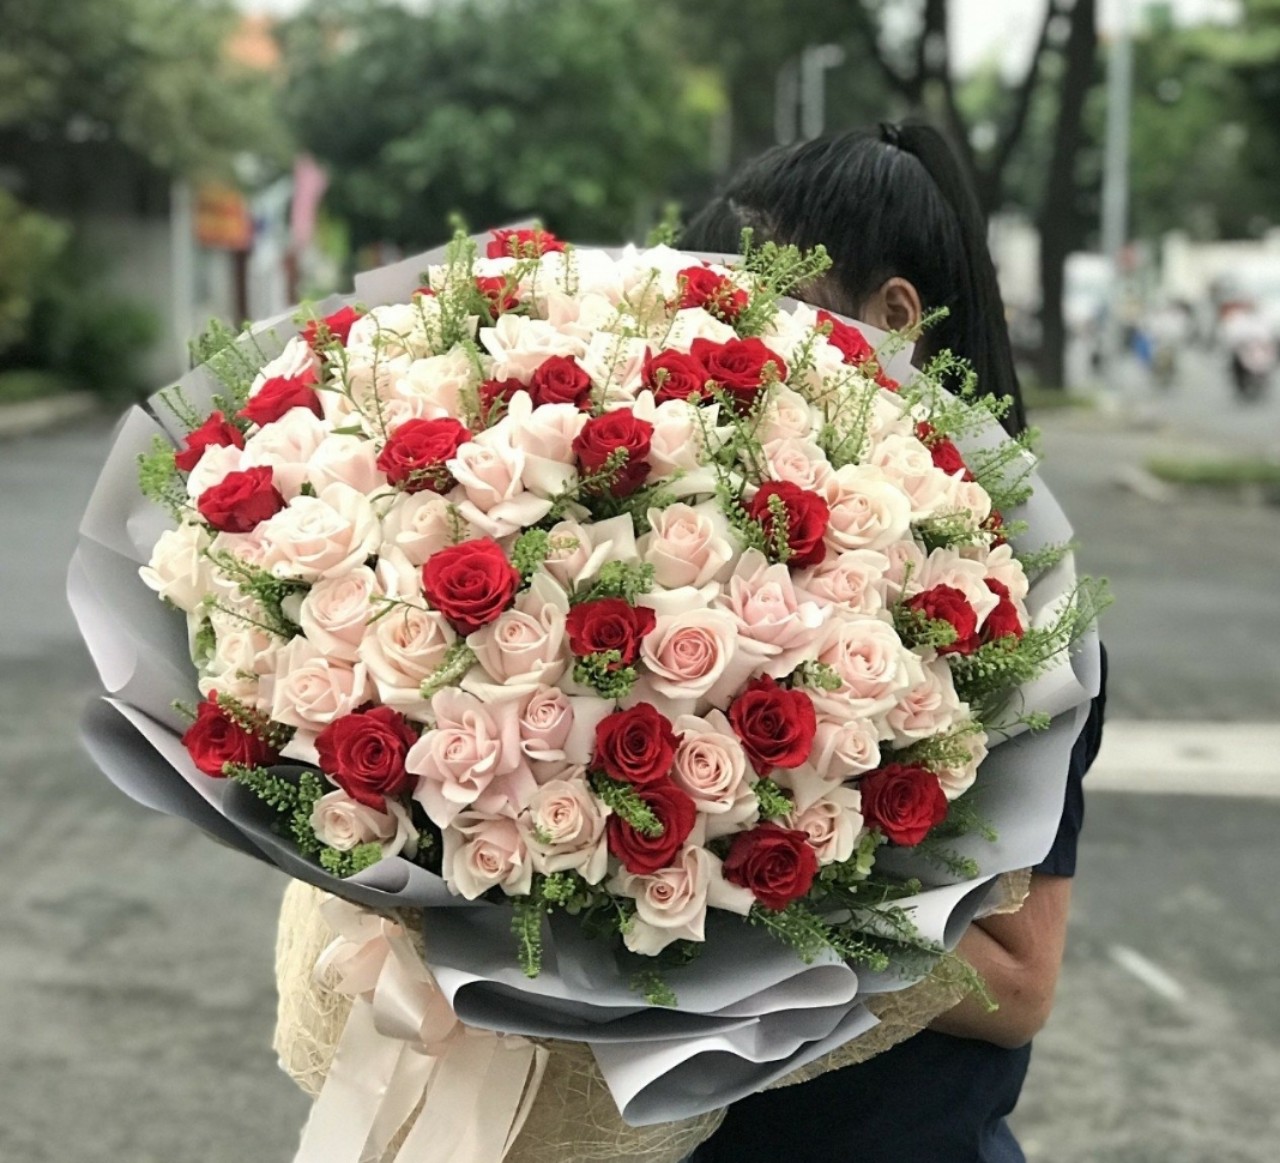 Shop hoa tươi quận Bình Thạnh giá rẻ đẹp và chất lượng tại Hồ Chí Minh